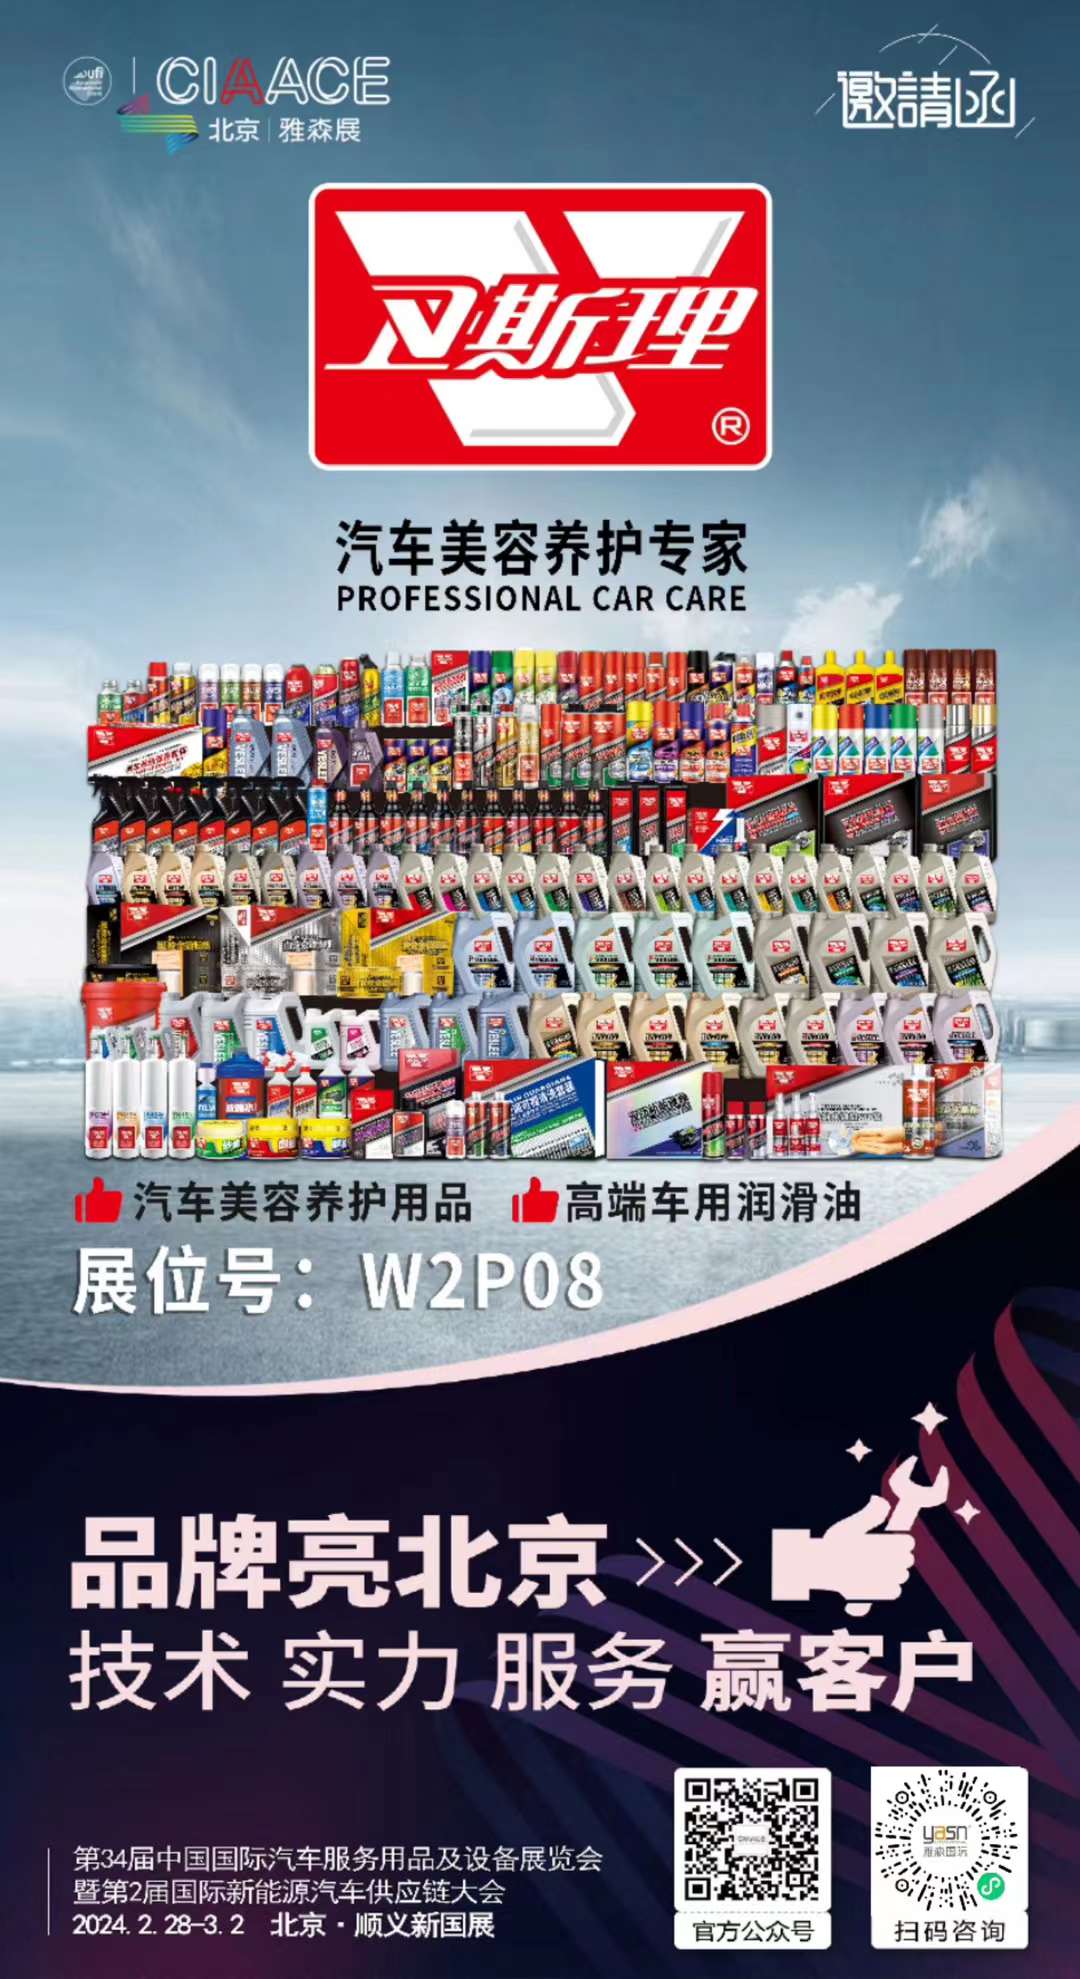 2月28日·北京新国展 | 卫斯理在W2P08与你相约